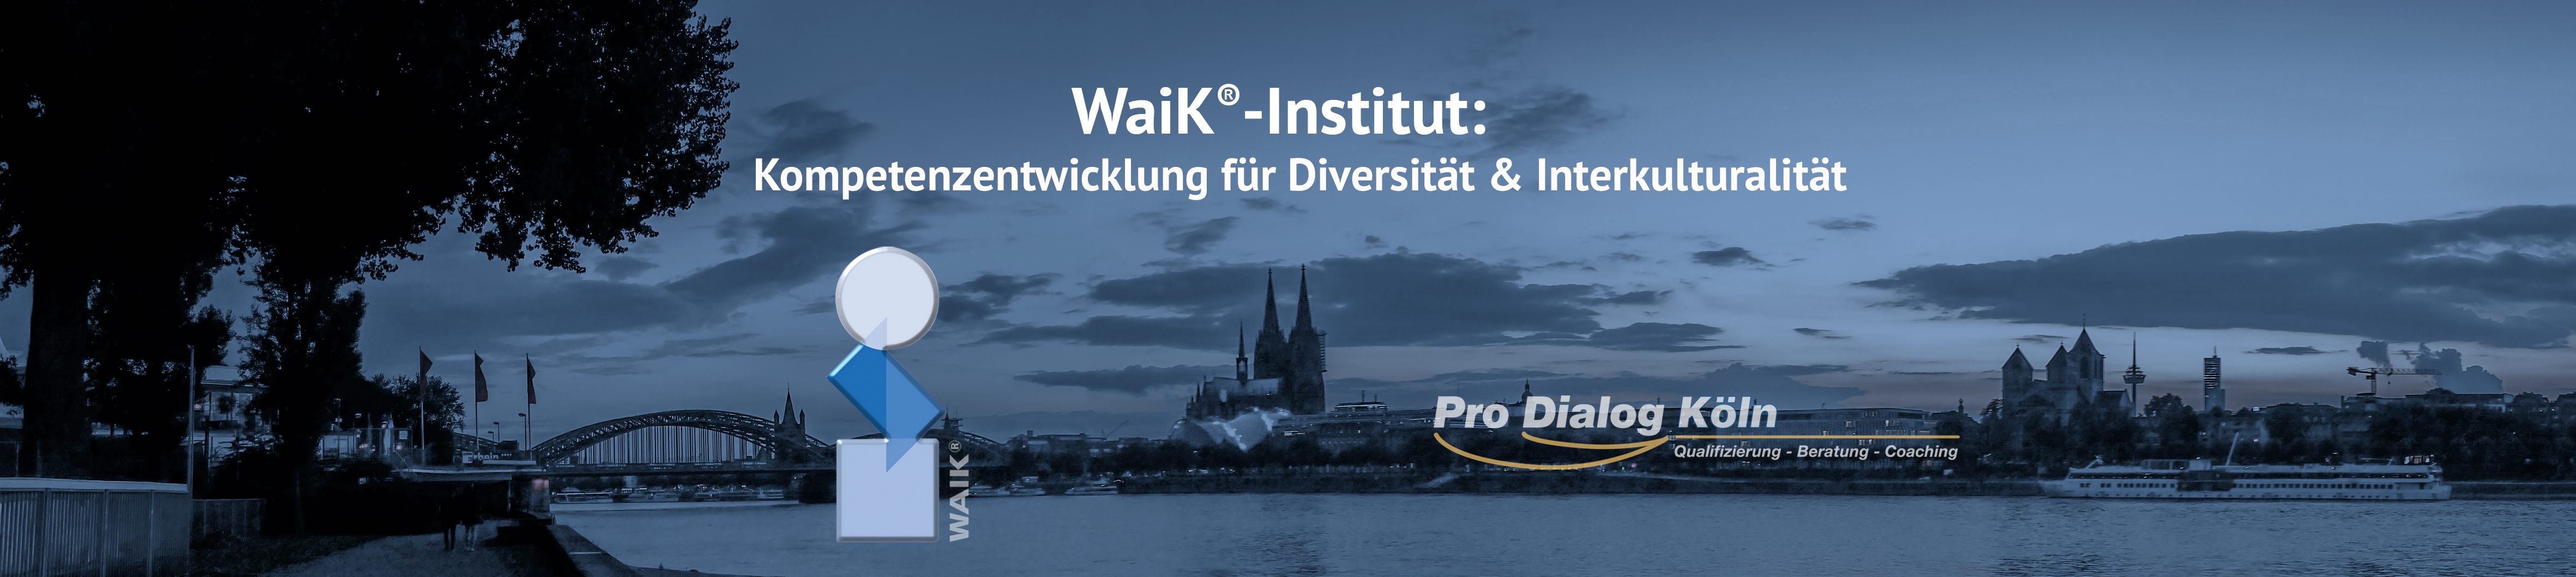 Pro-Dialog-Köln und Waik-Institut